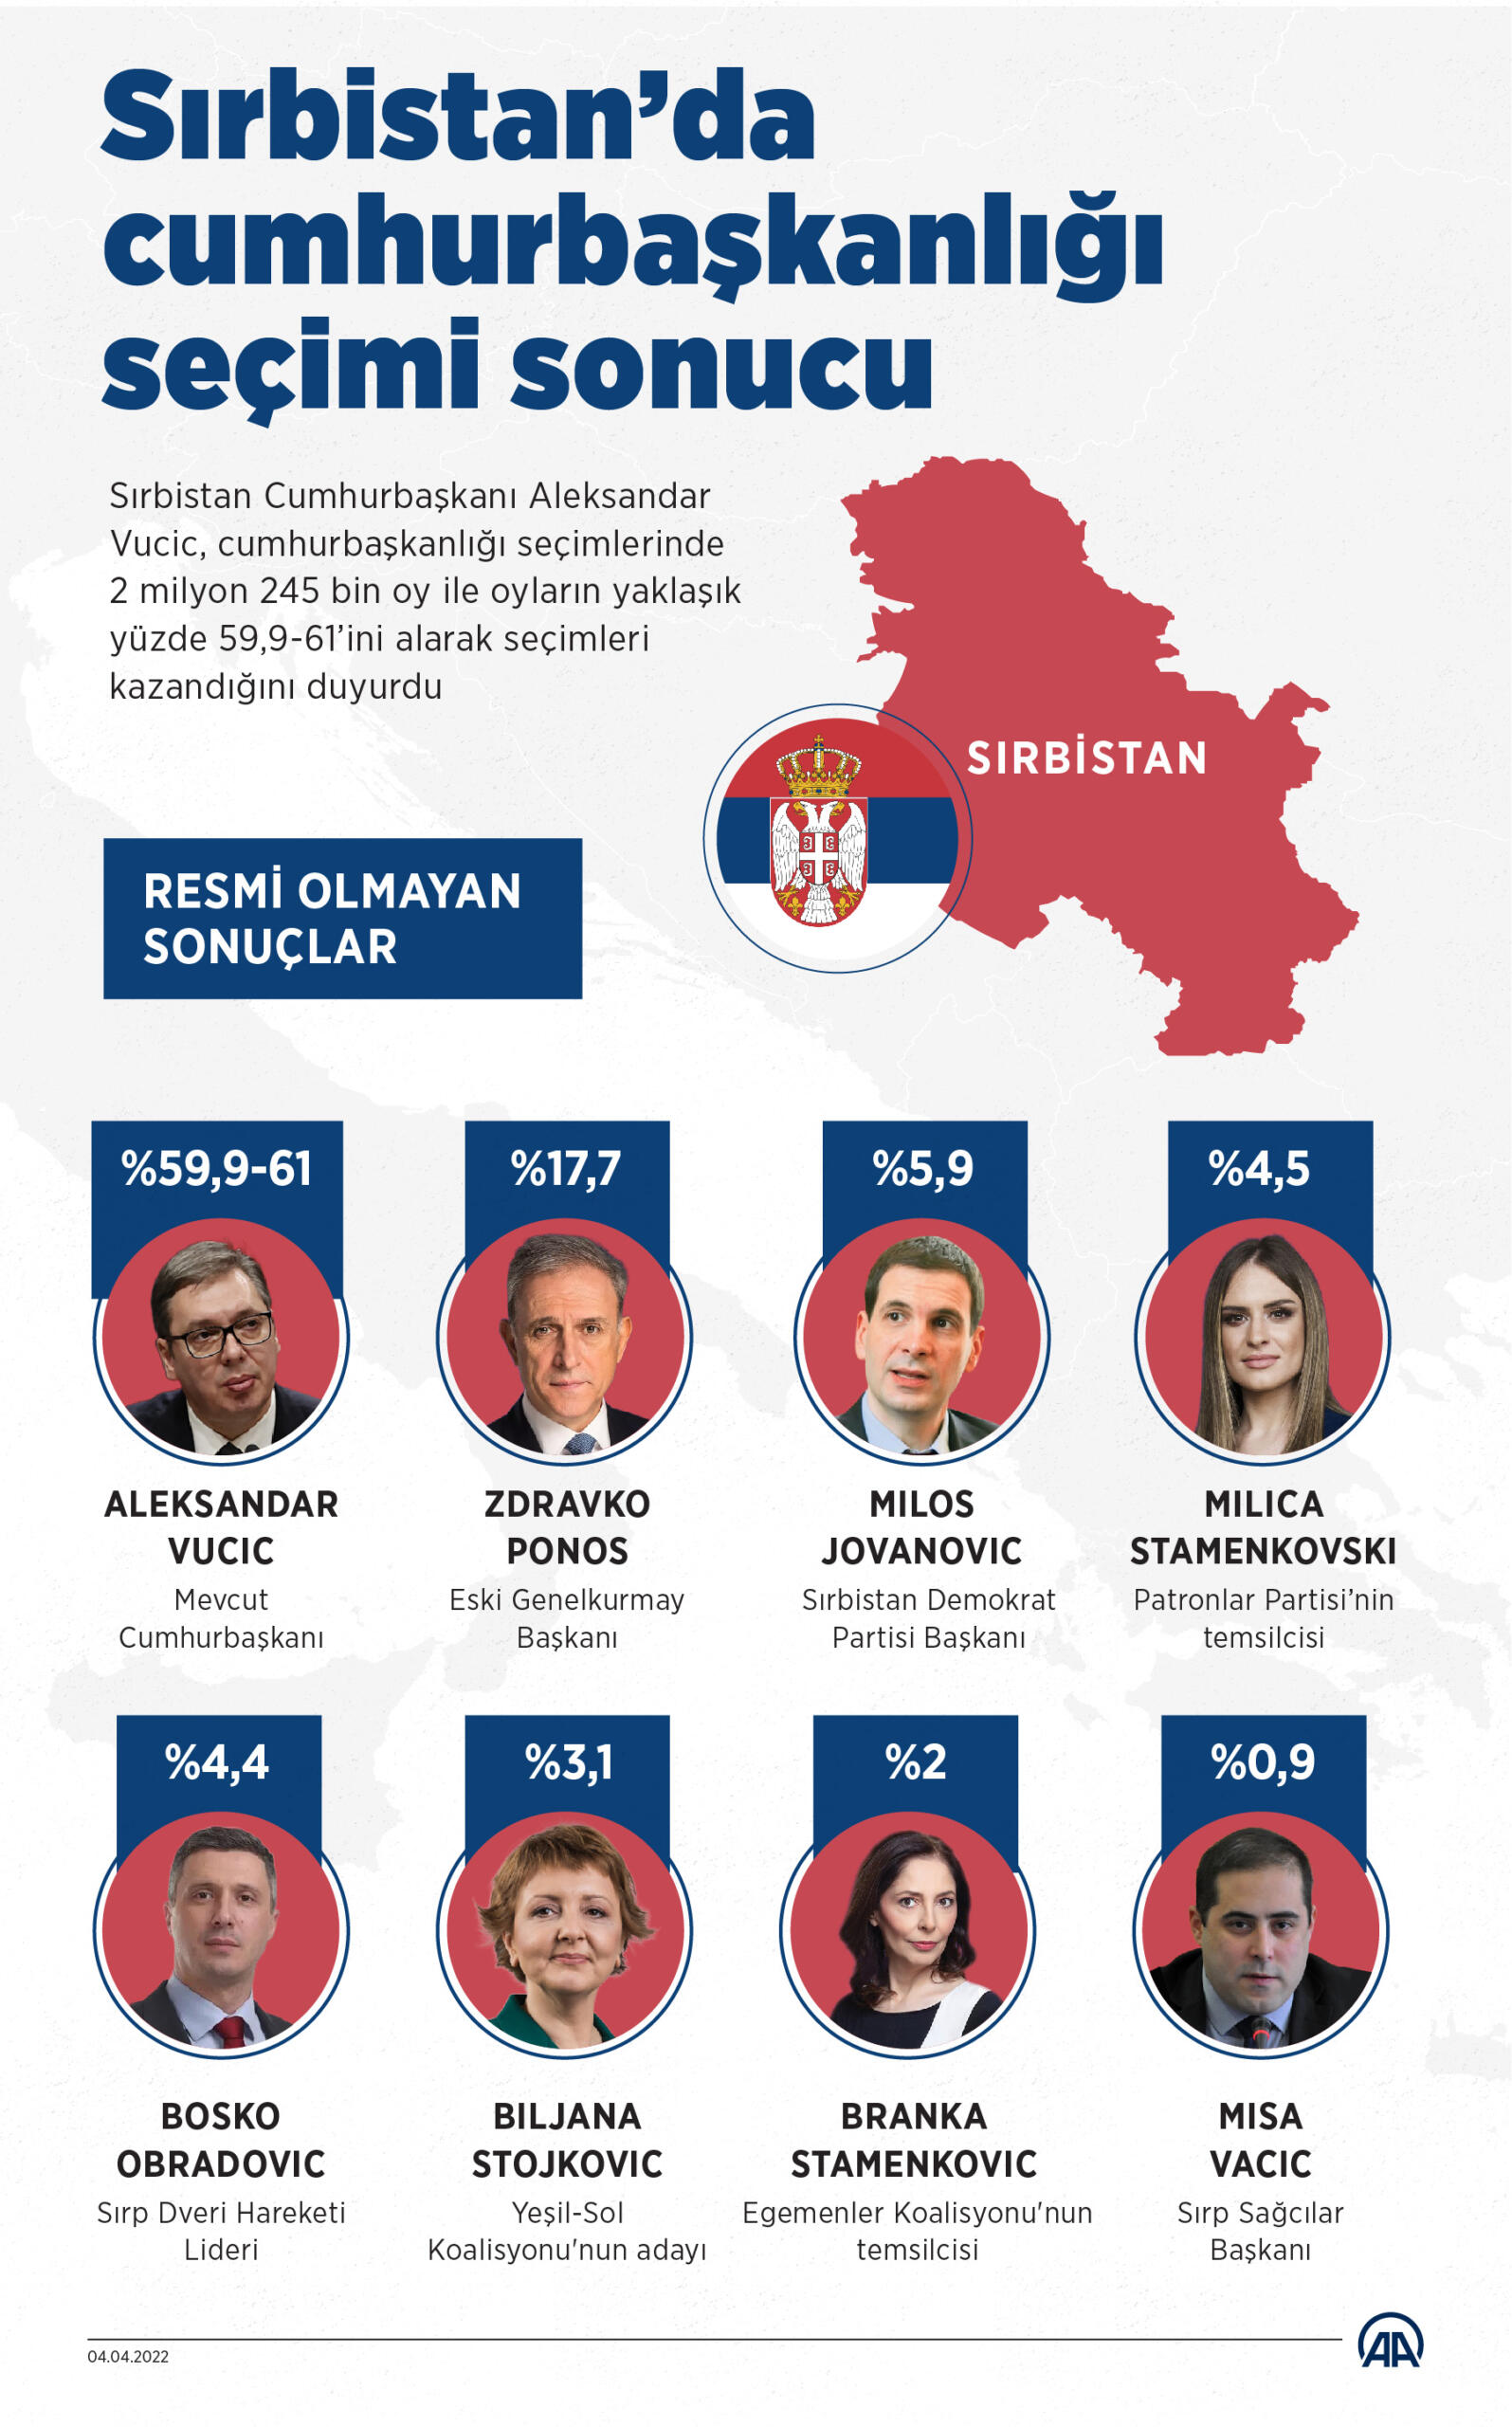 Sirbistan’da Cumhurbaşkanlığı seçimi sonucu